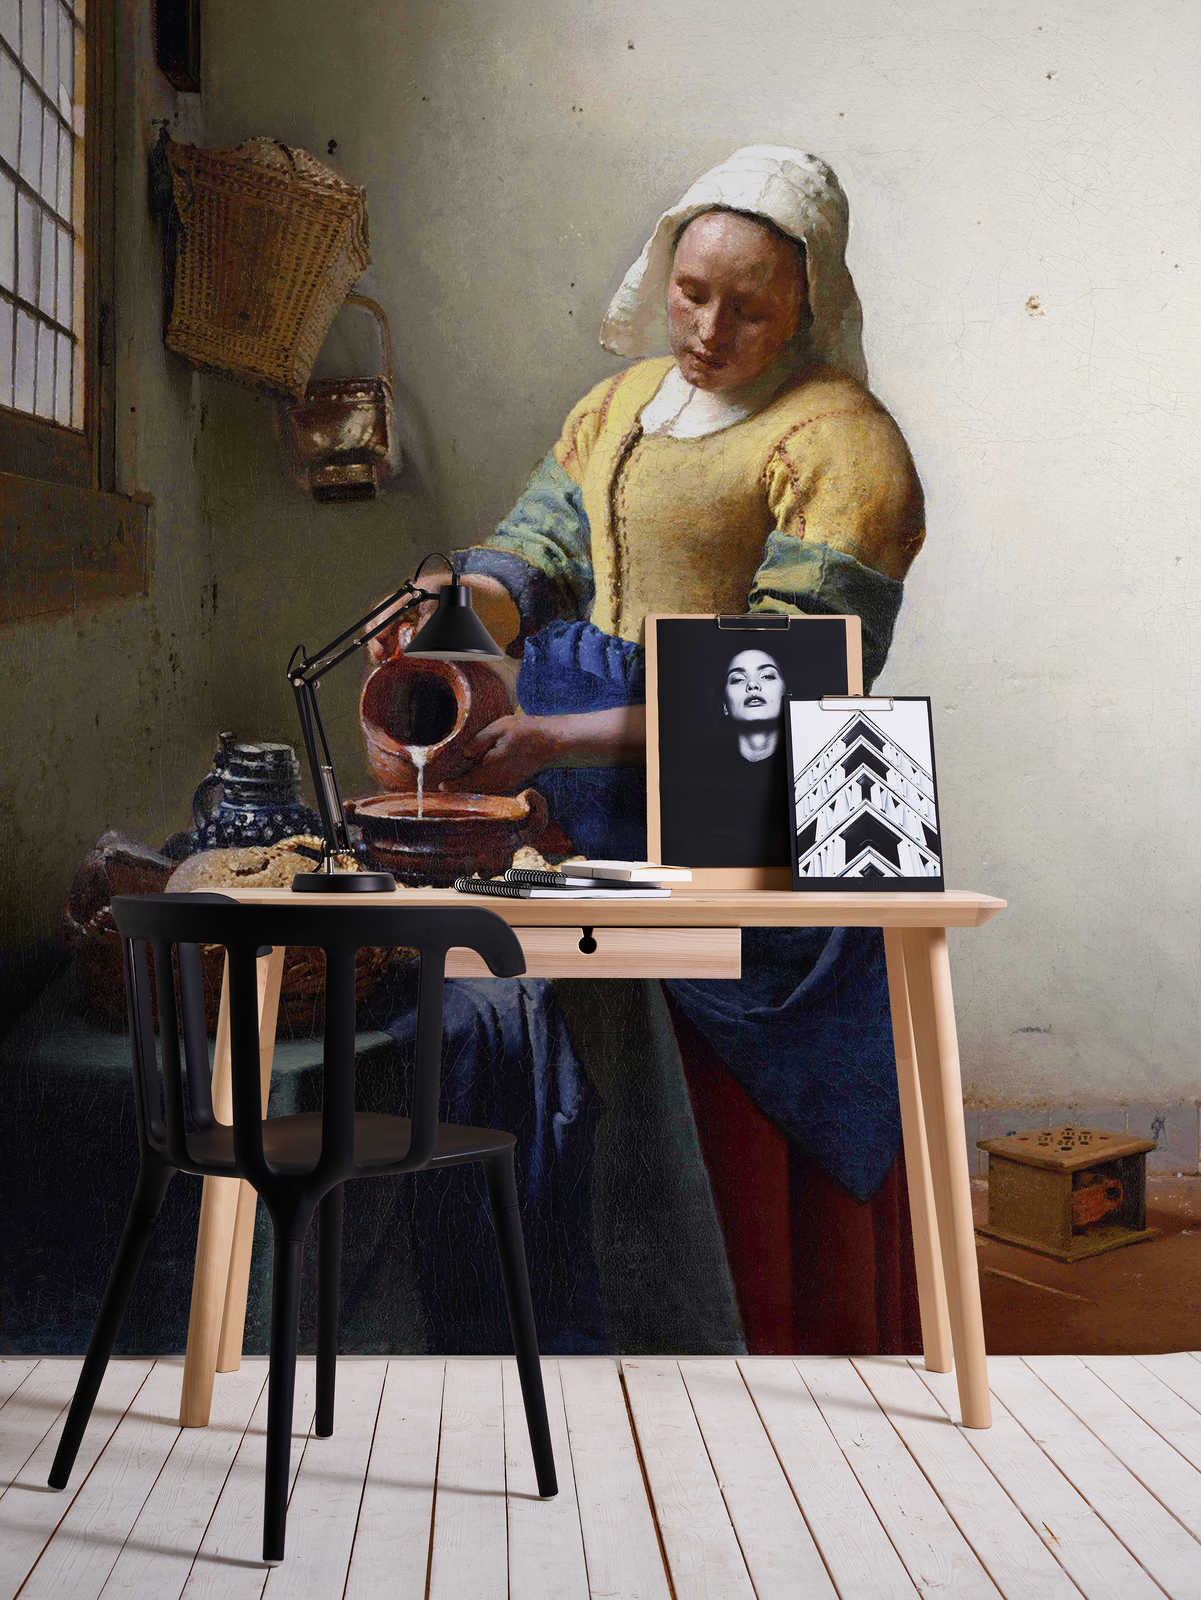             Mural "Criada con jarra de leche" de Jan Vermeer
        